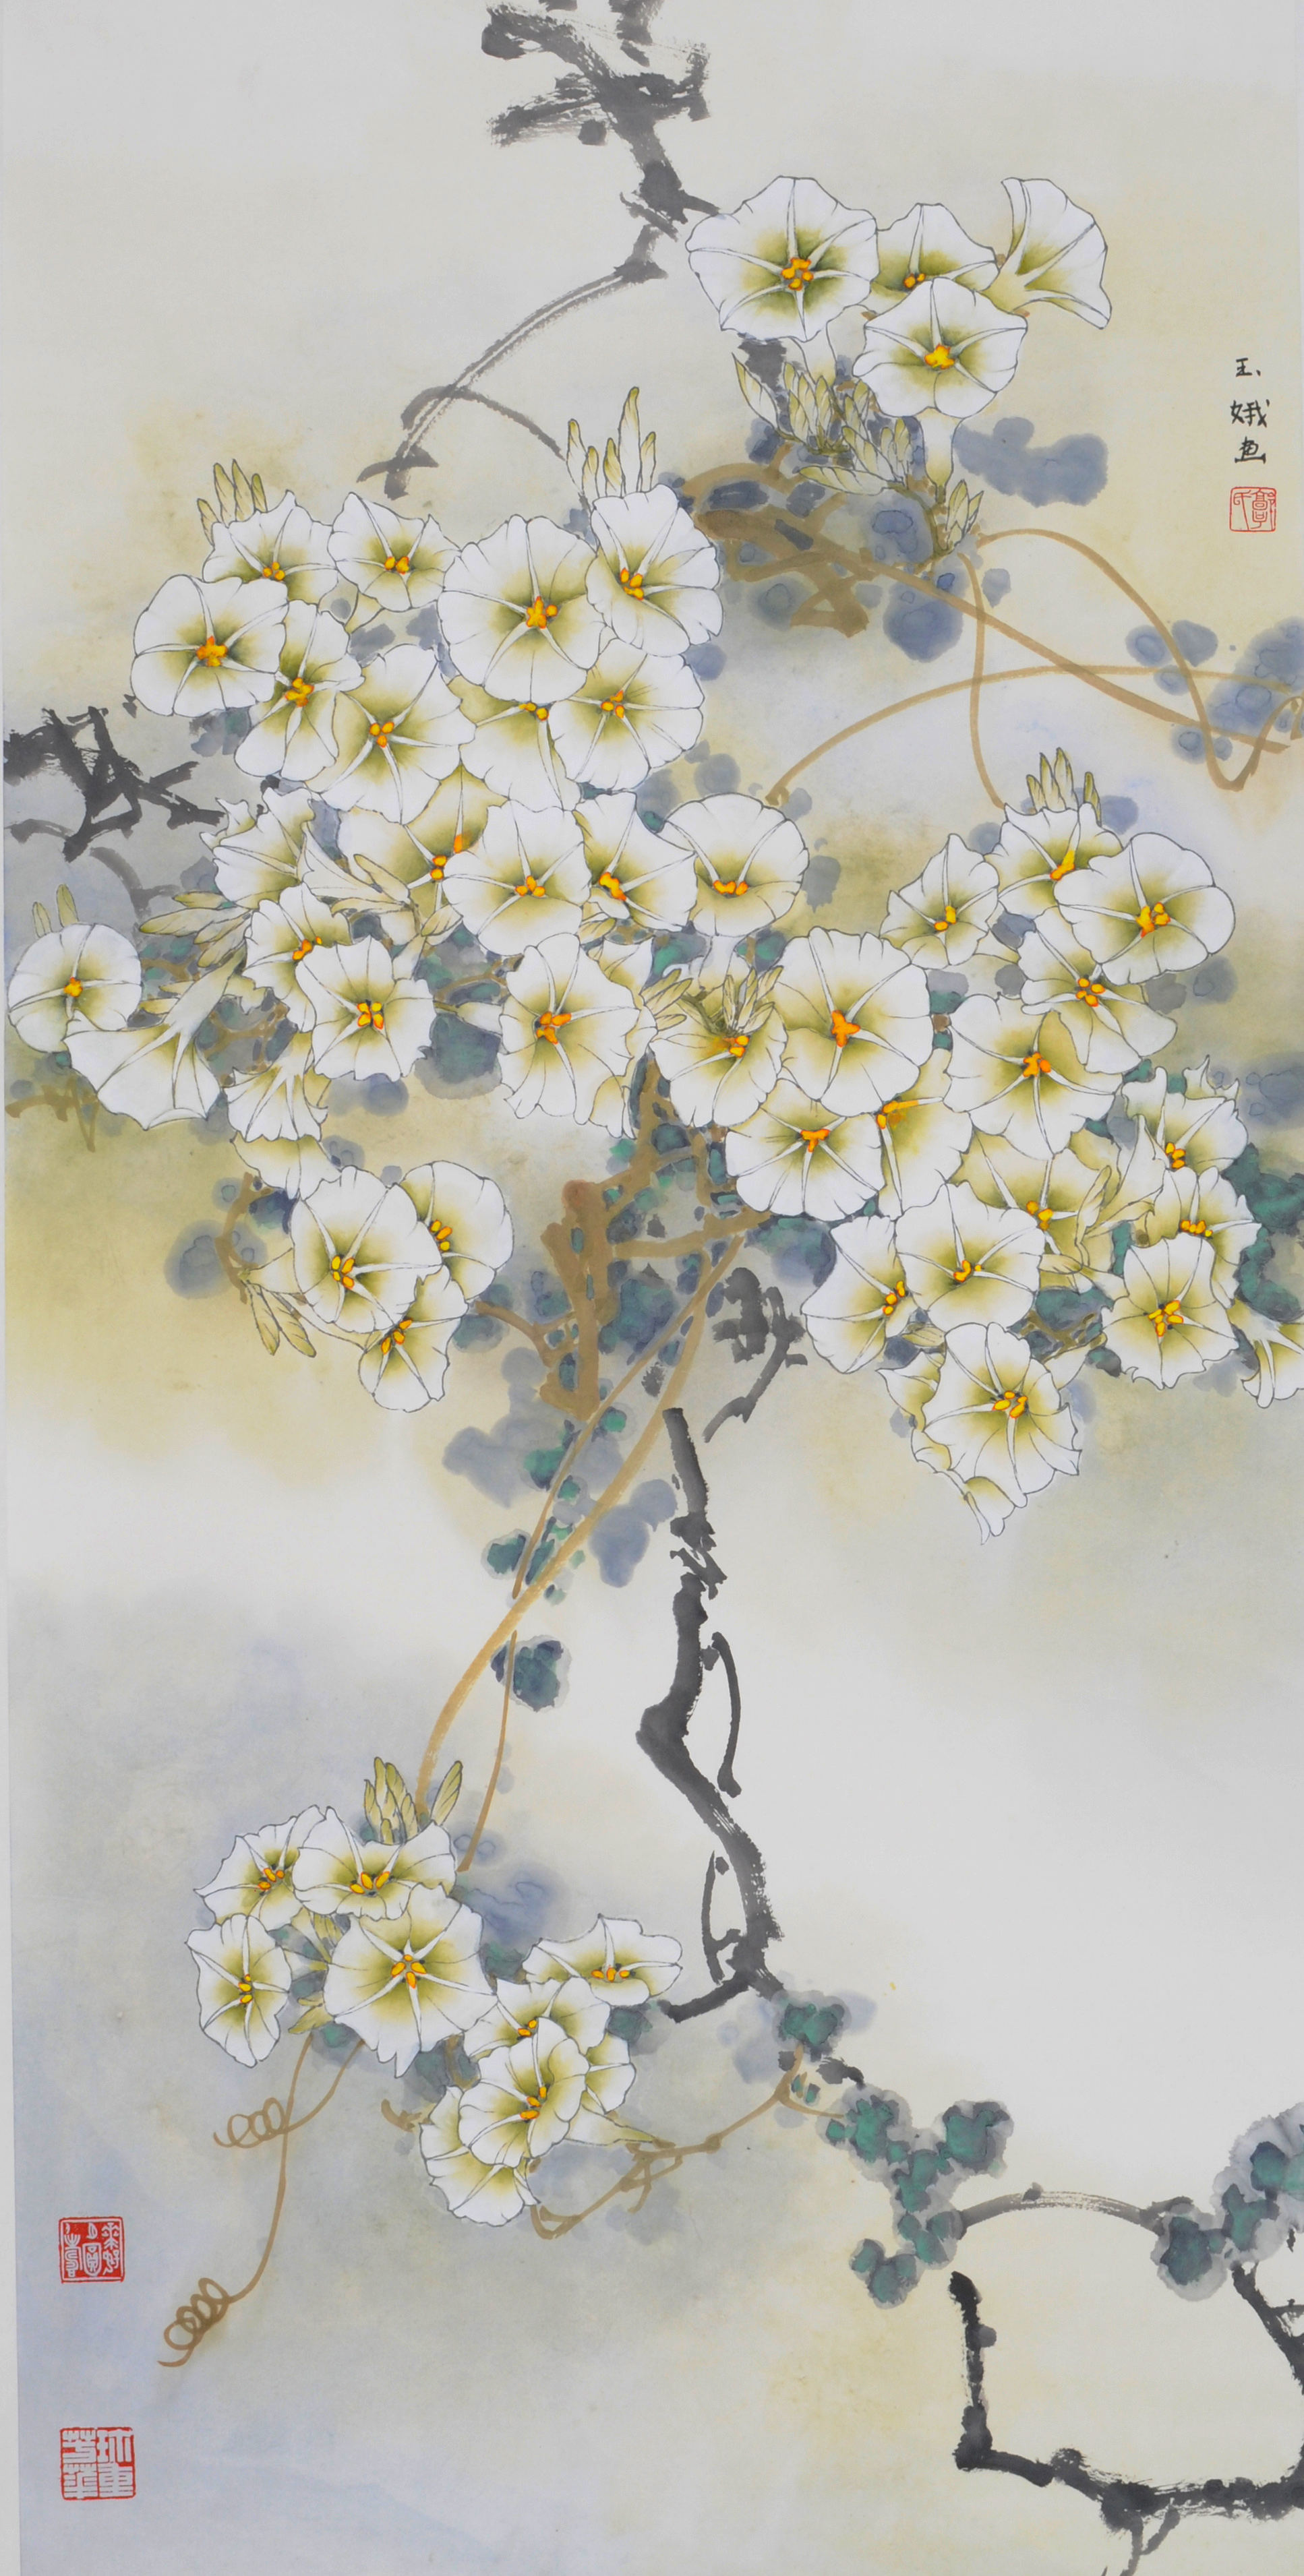 郭玉娥简历
2004年起师从著名花鸟画家叶泉先生学习及创作，并为叶泉艺术工作室助理。
